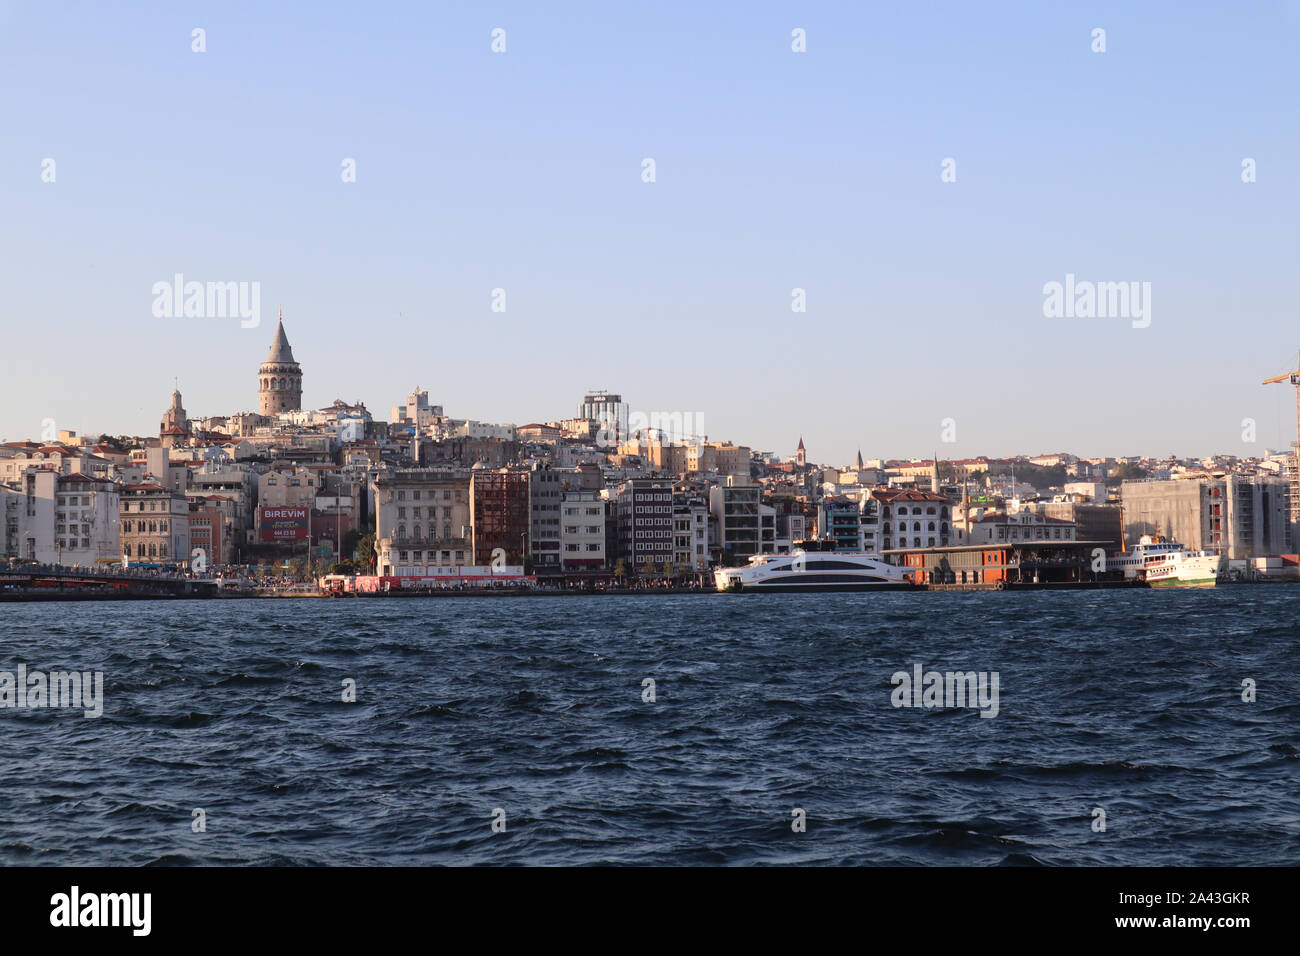 Istanbul, Fatih Eminonu / Turchia - 14 Settembre 2019: la bella e antica città di Kadikoy e Torre Galata nel retro. Foto Stock